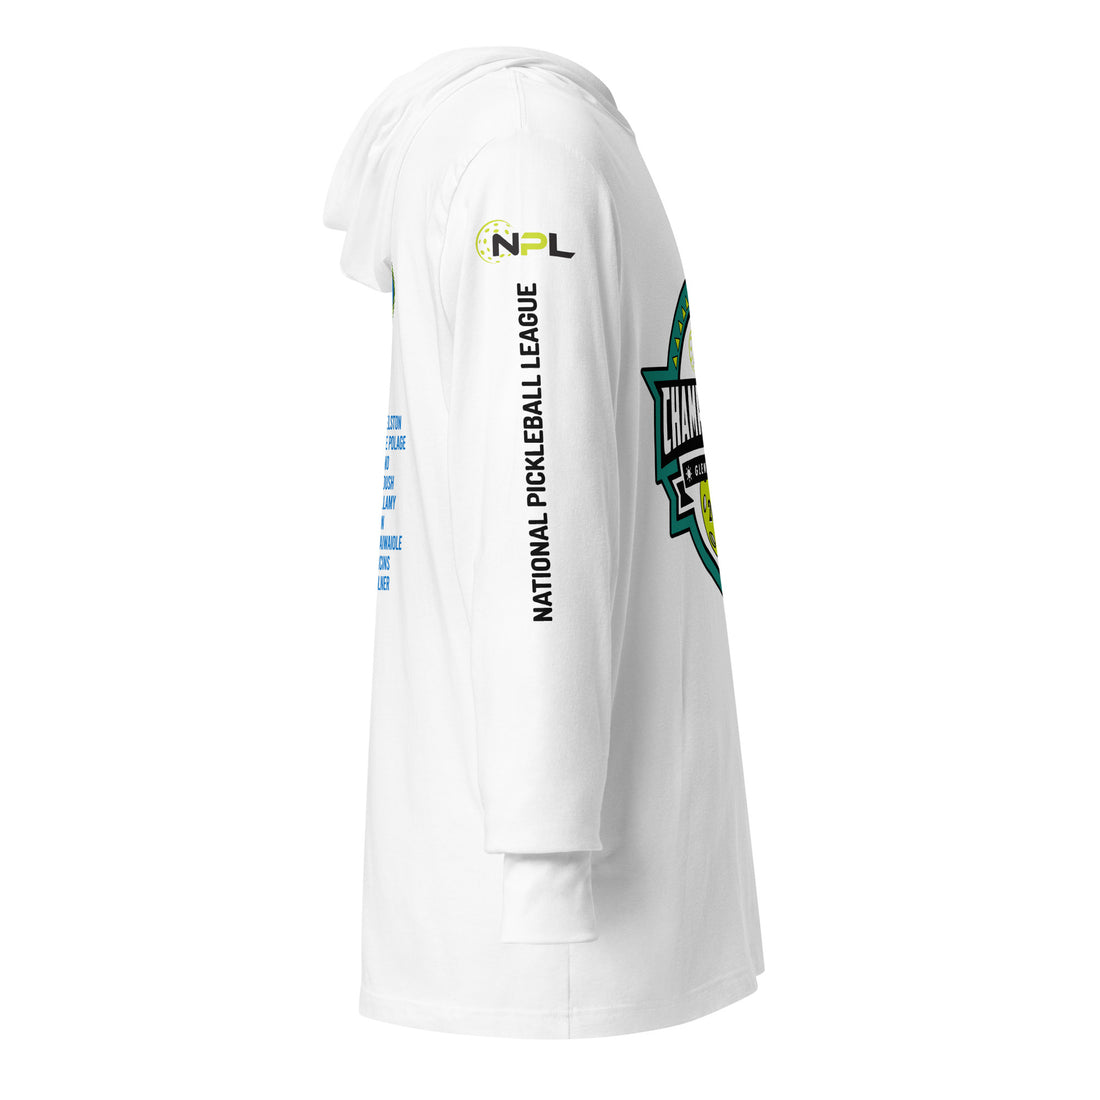 OKC Punishers™ Glendale AZ Championship NPL™ Commemorative Hooded Long-Sleeves Unisex T-Shirt!